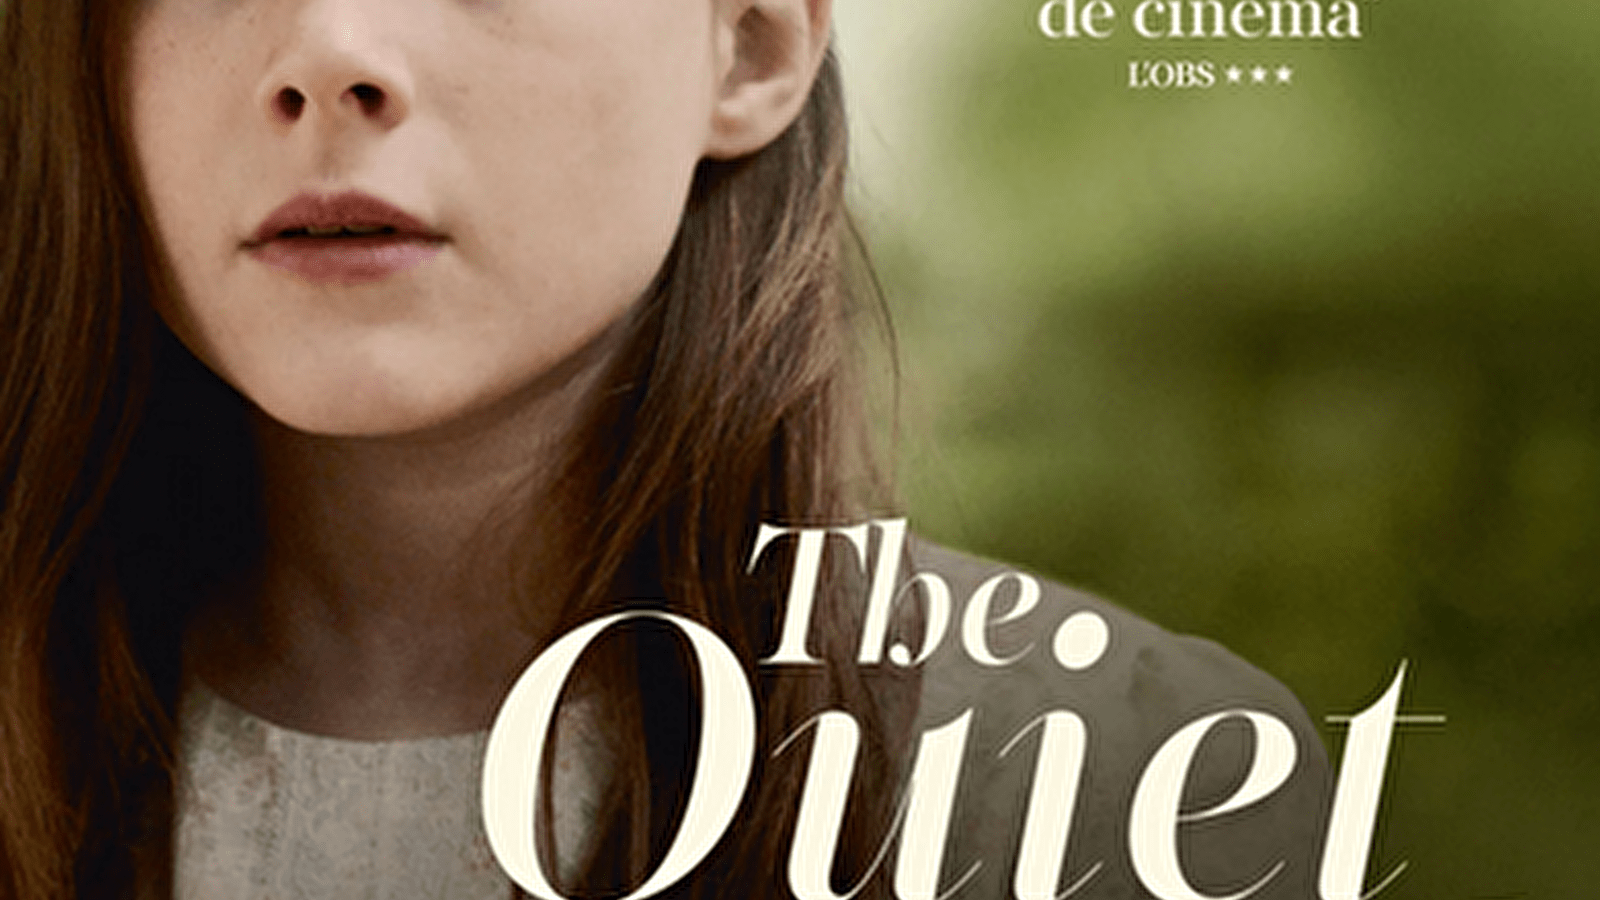 Séance de cinéma 'The quiet girl'